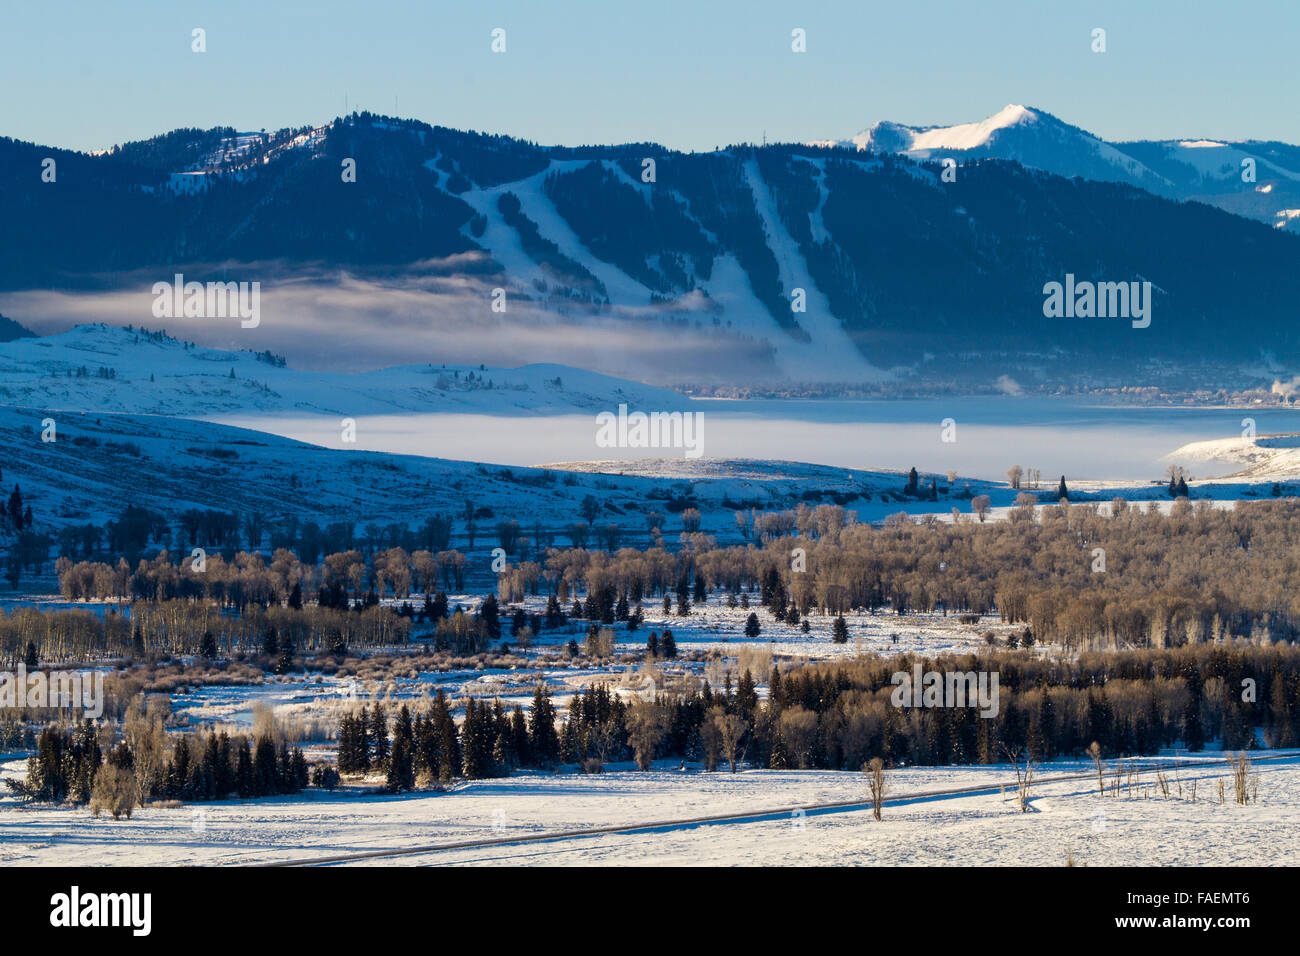 El rey de la Nieve Ski Resort dominando en Jackson, Wyoming y la National Elk refugio. Foto de stock